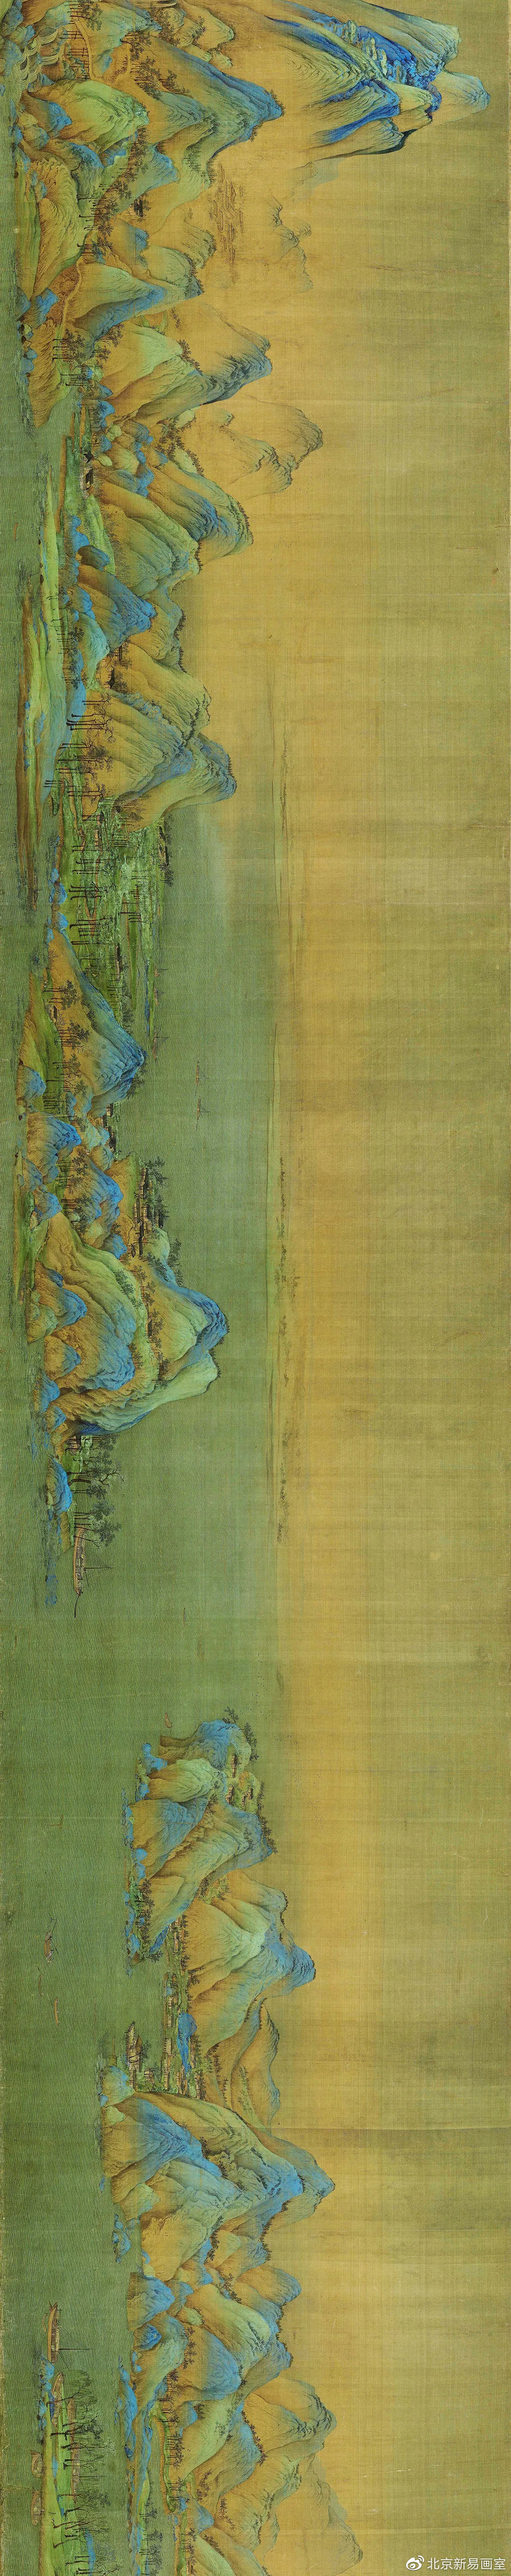 千里江山图现存于哪图片